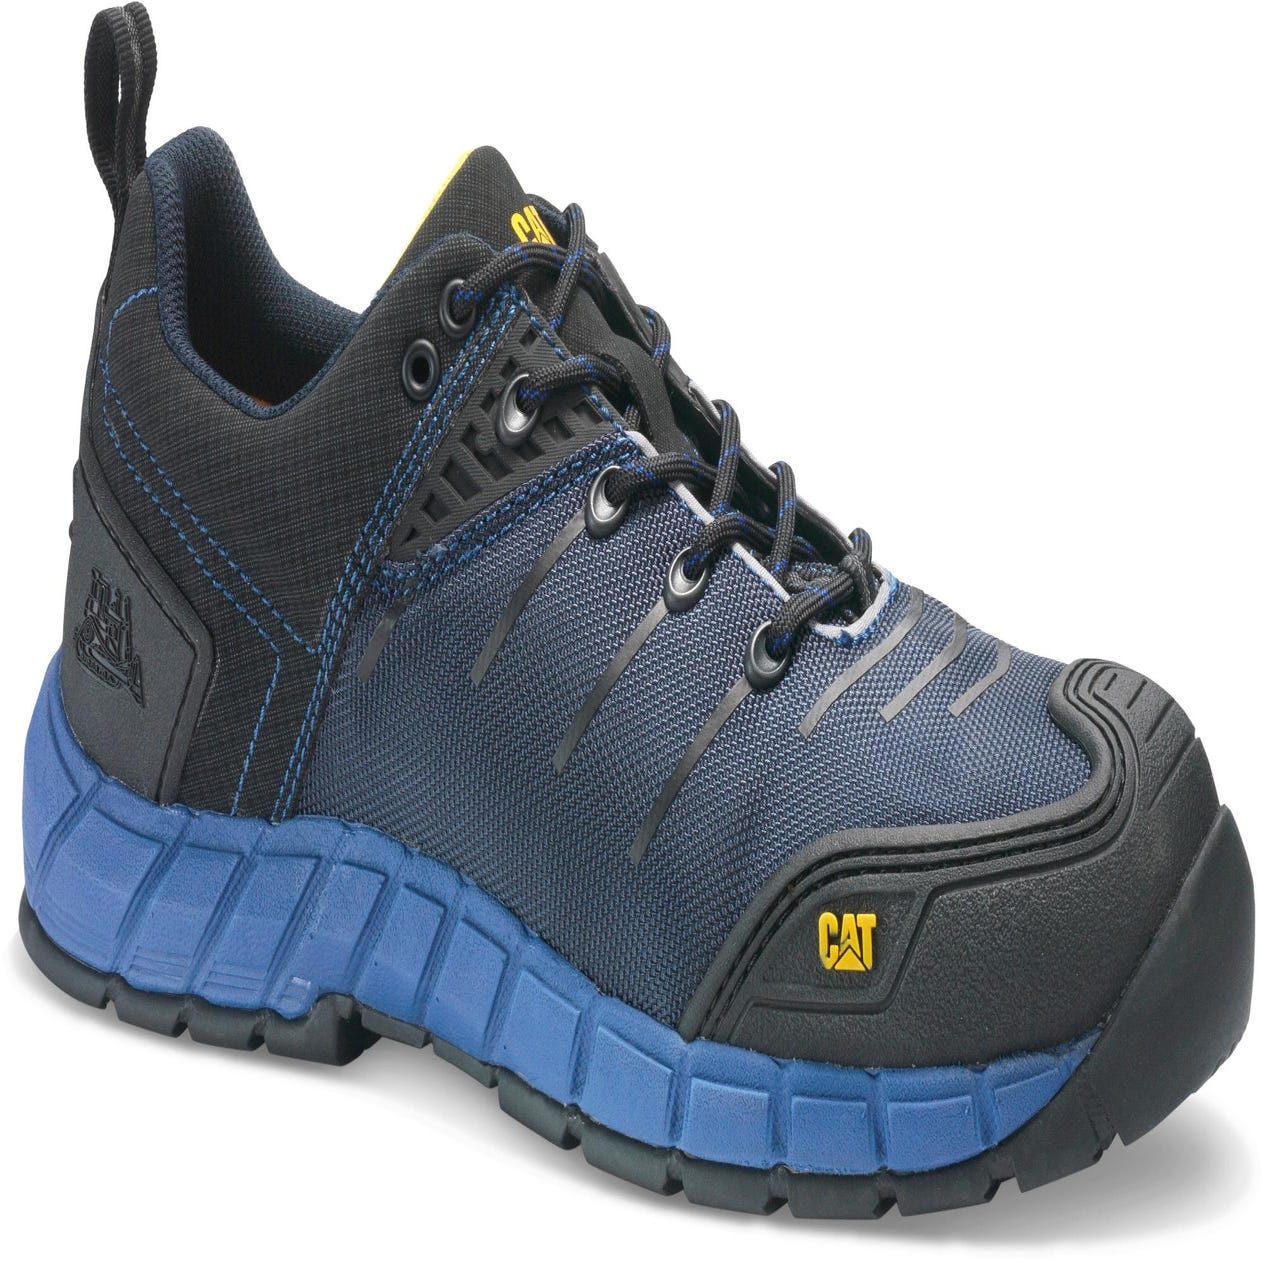 Chaussures de sécurité basses CATERPILLAR Byway, coloris bleu foncé T46